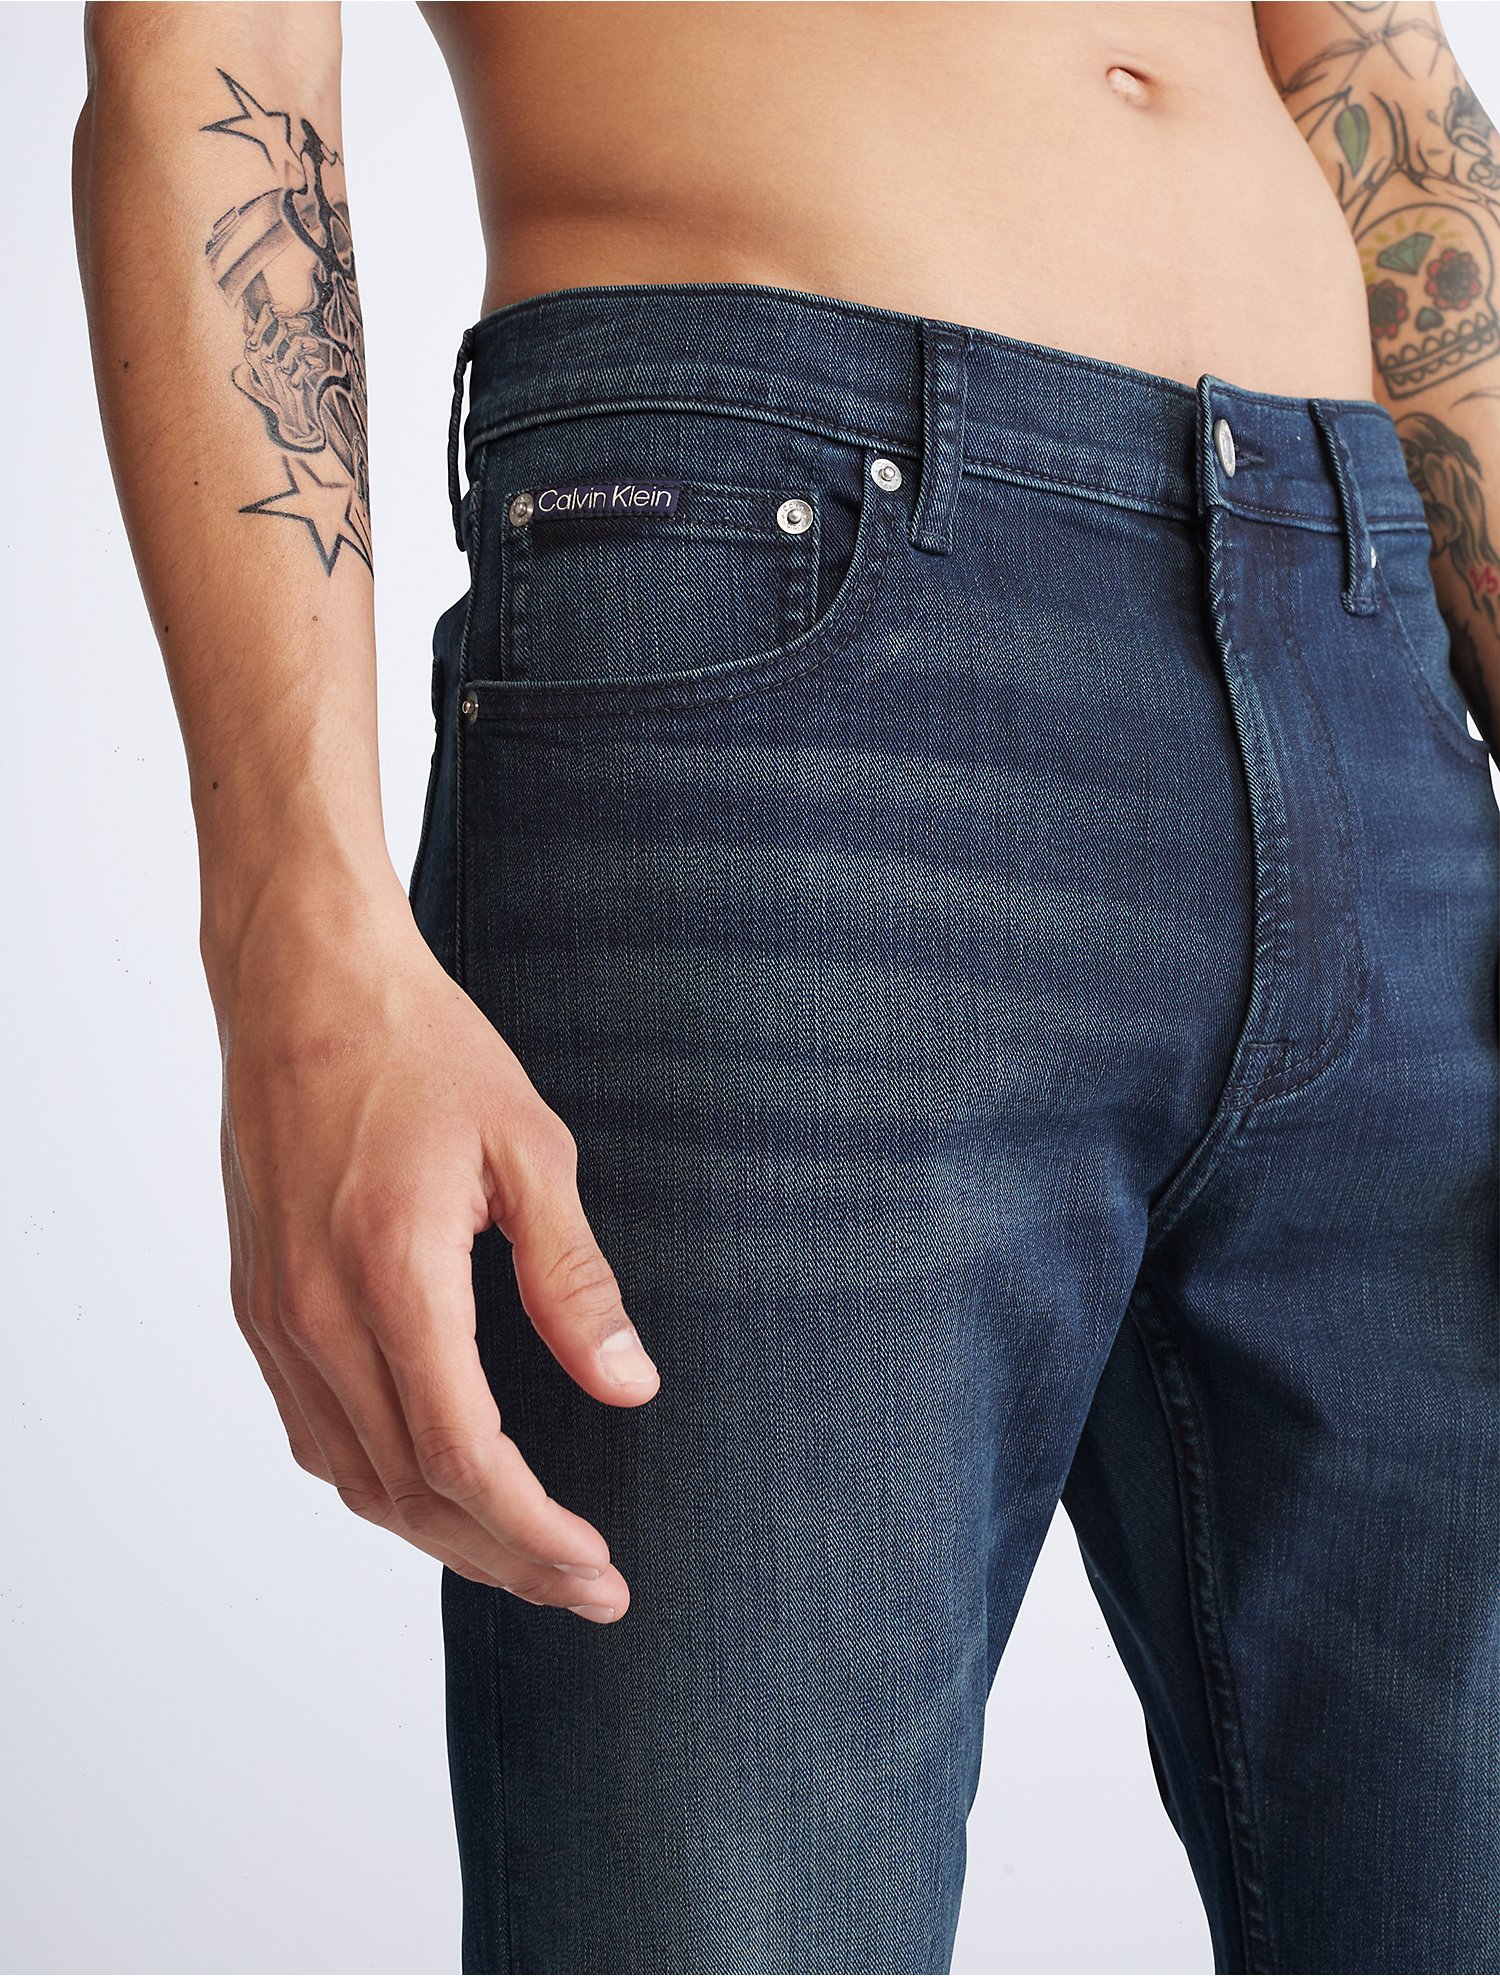 Fremskridt Pædagogik Udgående Slim Straight Fit Jeans | Calvin Klein